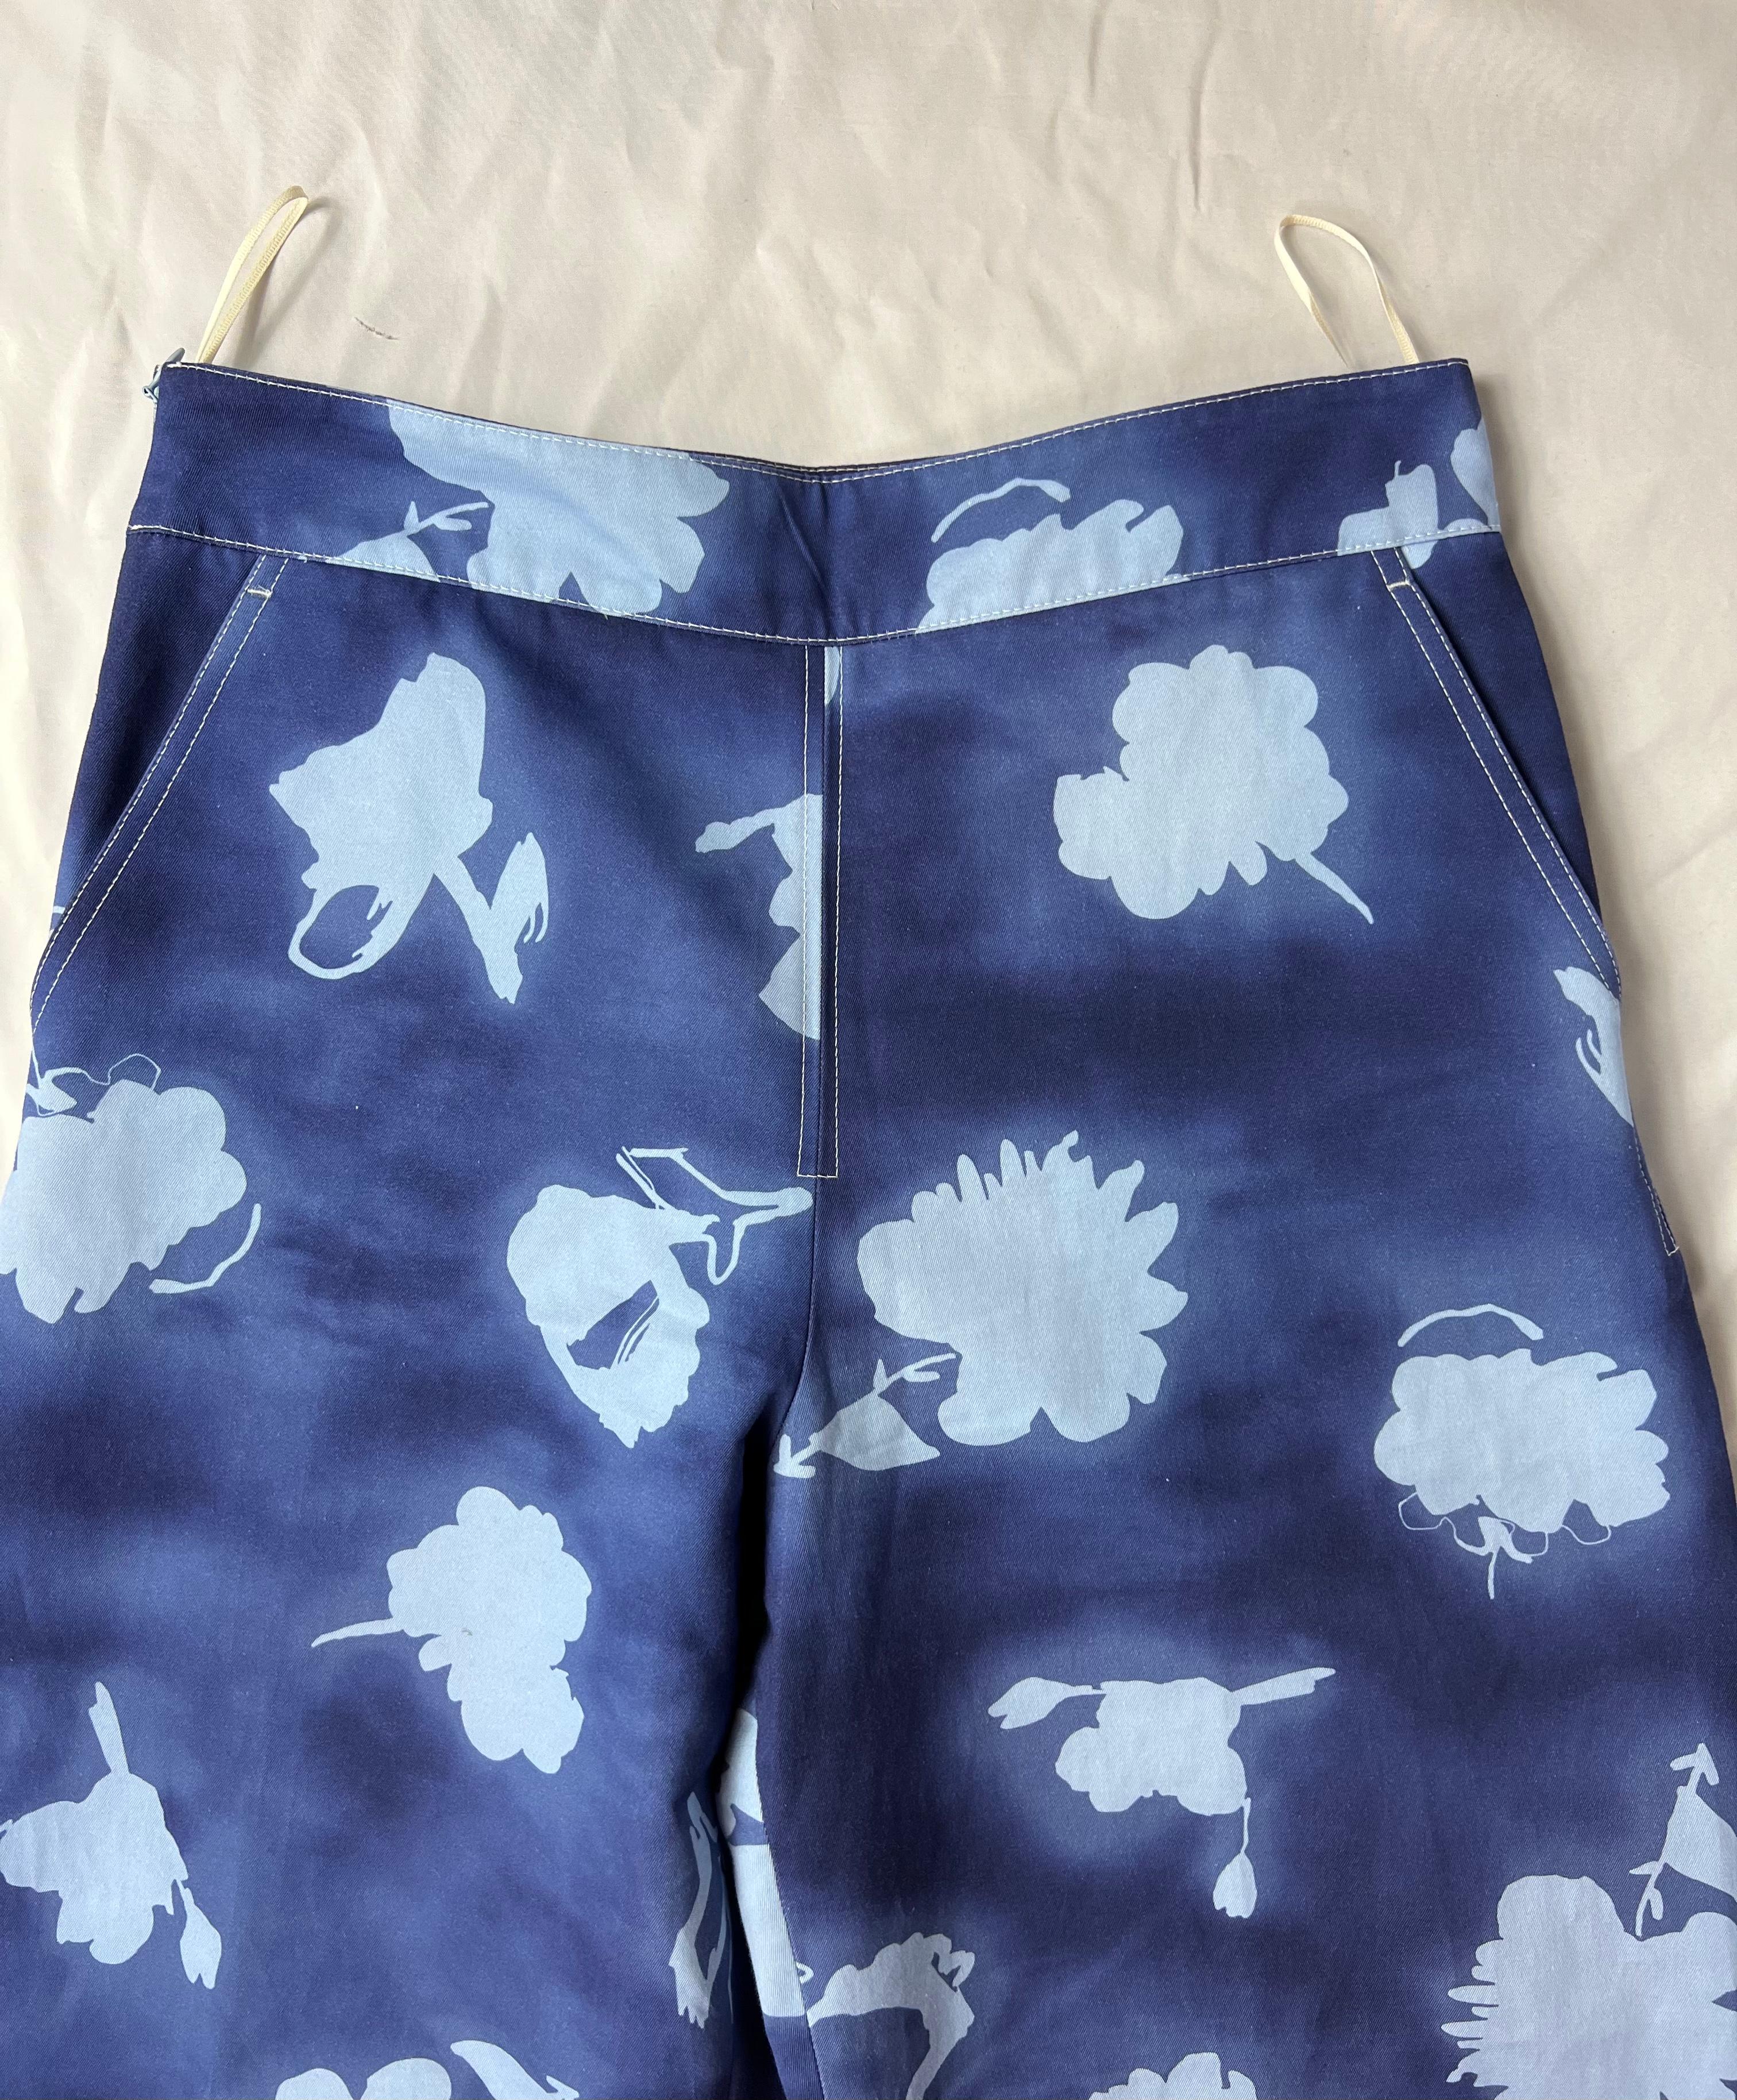 Marni Blaue Hose, Größe 42

- Hoch tailliert
- Gerades Bein 
- Verdeckter seitlicher Reißverschluss
- Seitentaschen
- Florales Muster